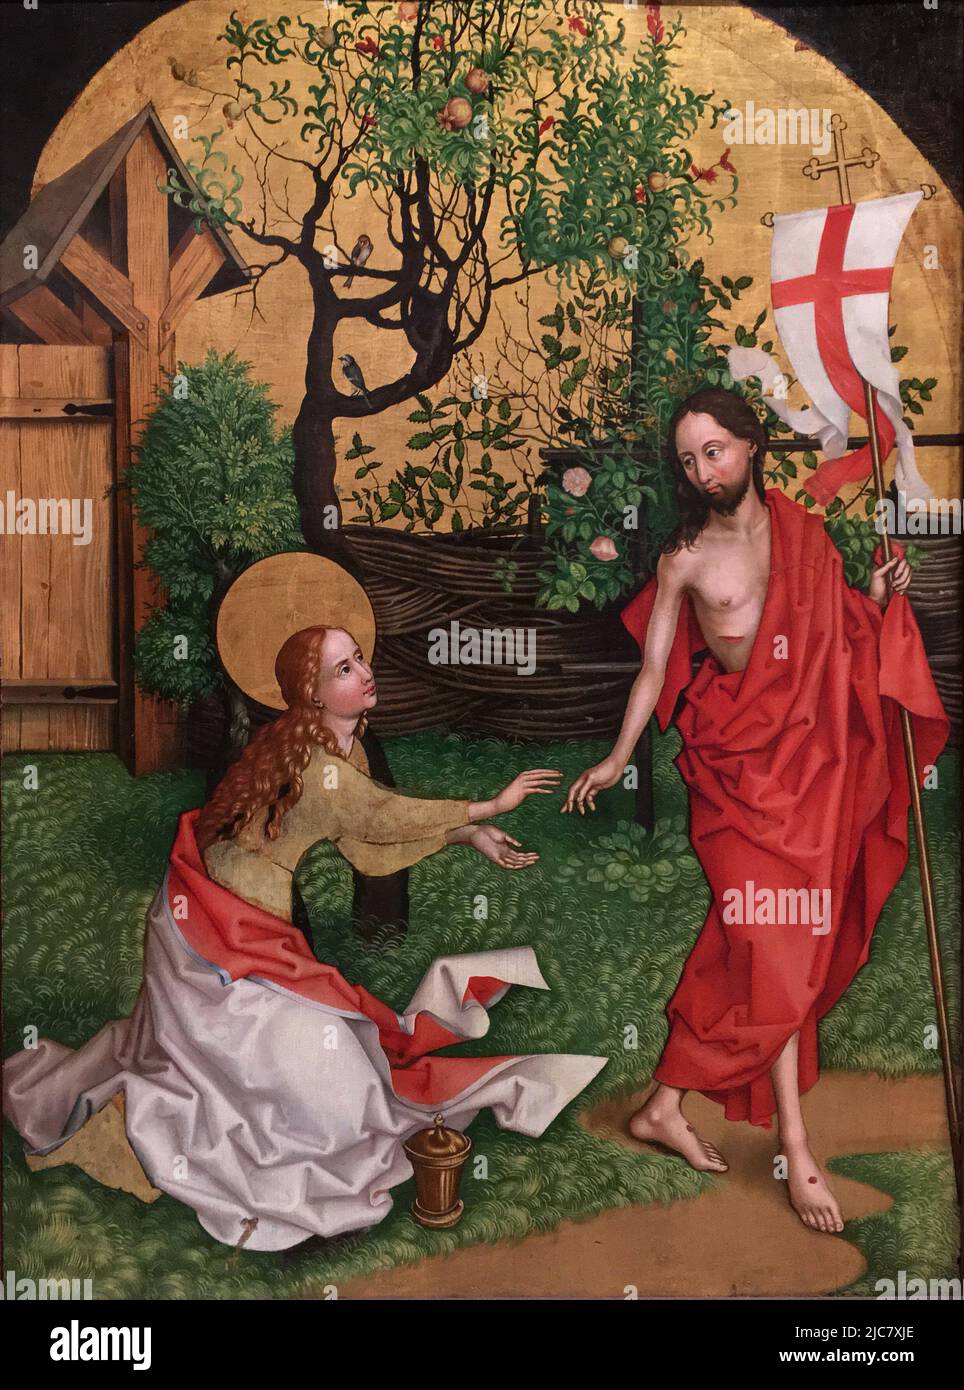 Noli me tangere de Martin Schongauer (1450-1491). Cette peinture dépeint le moment où Marie Magdelene reconnaît le Jésus ressuscité. Elle atteint pour lui, mais il lui demande de ne pas le toucher (Noli me tangere) car il n'est pas encore monté au ciel. Banque D'Images